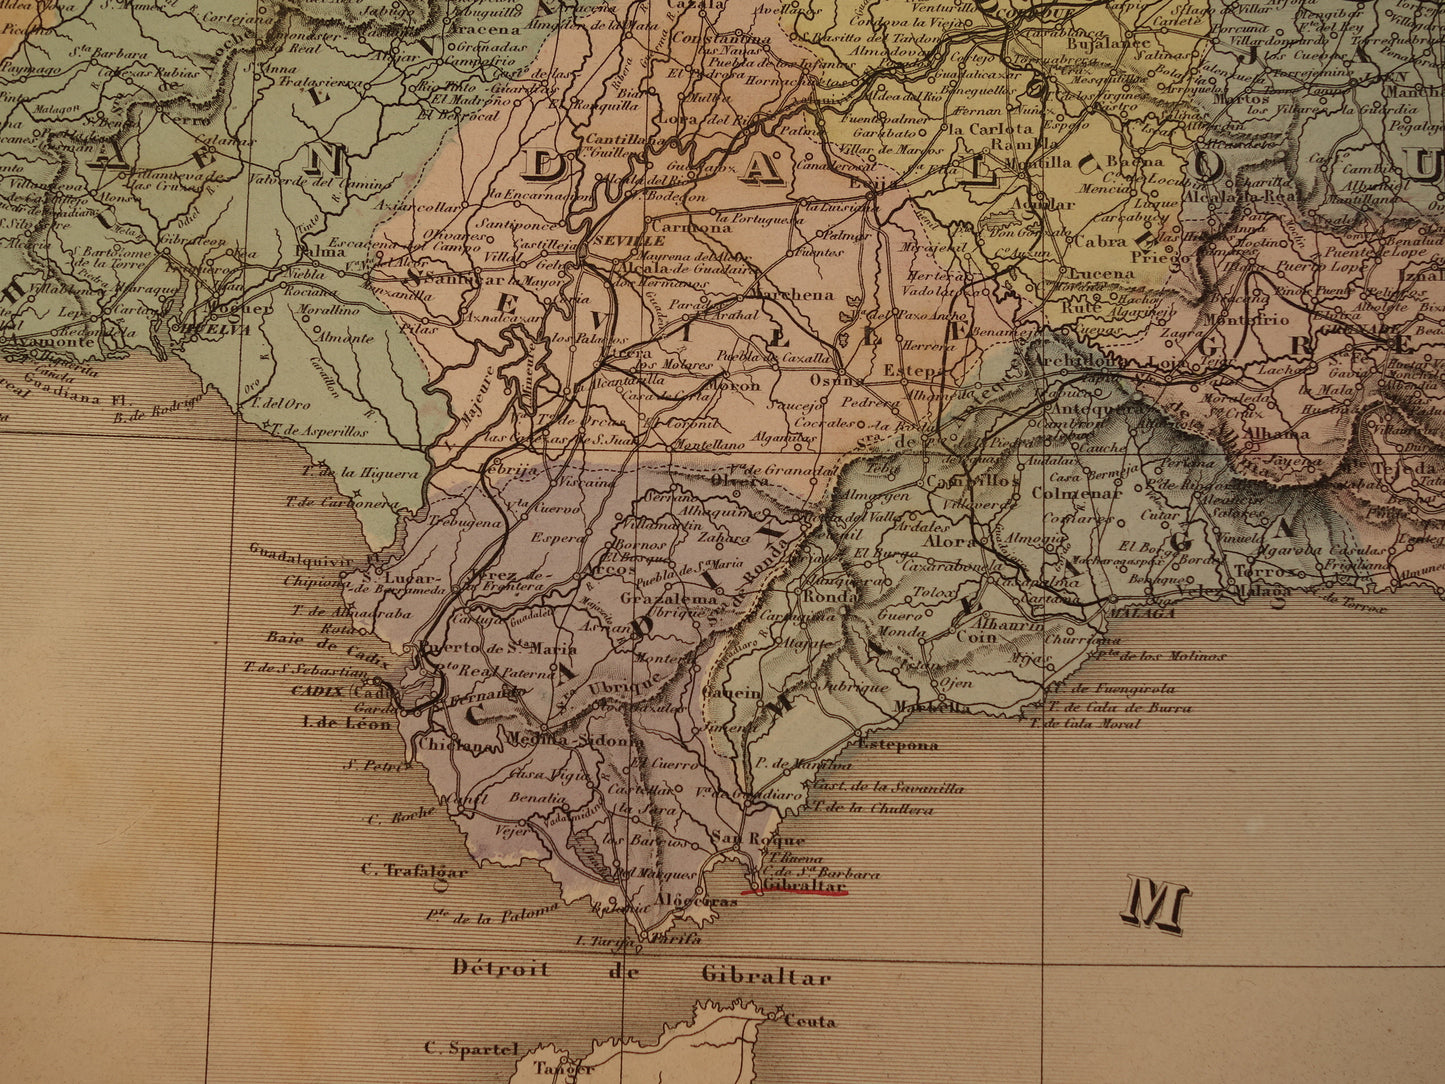 Grote oude landkaart van Spanje en Portugal uit 1880 Zeer mooie handgekleurde Franse antieke kaart Originele vintage kaarten